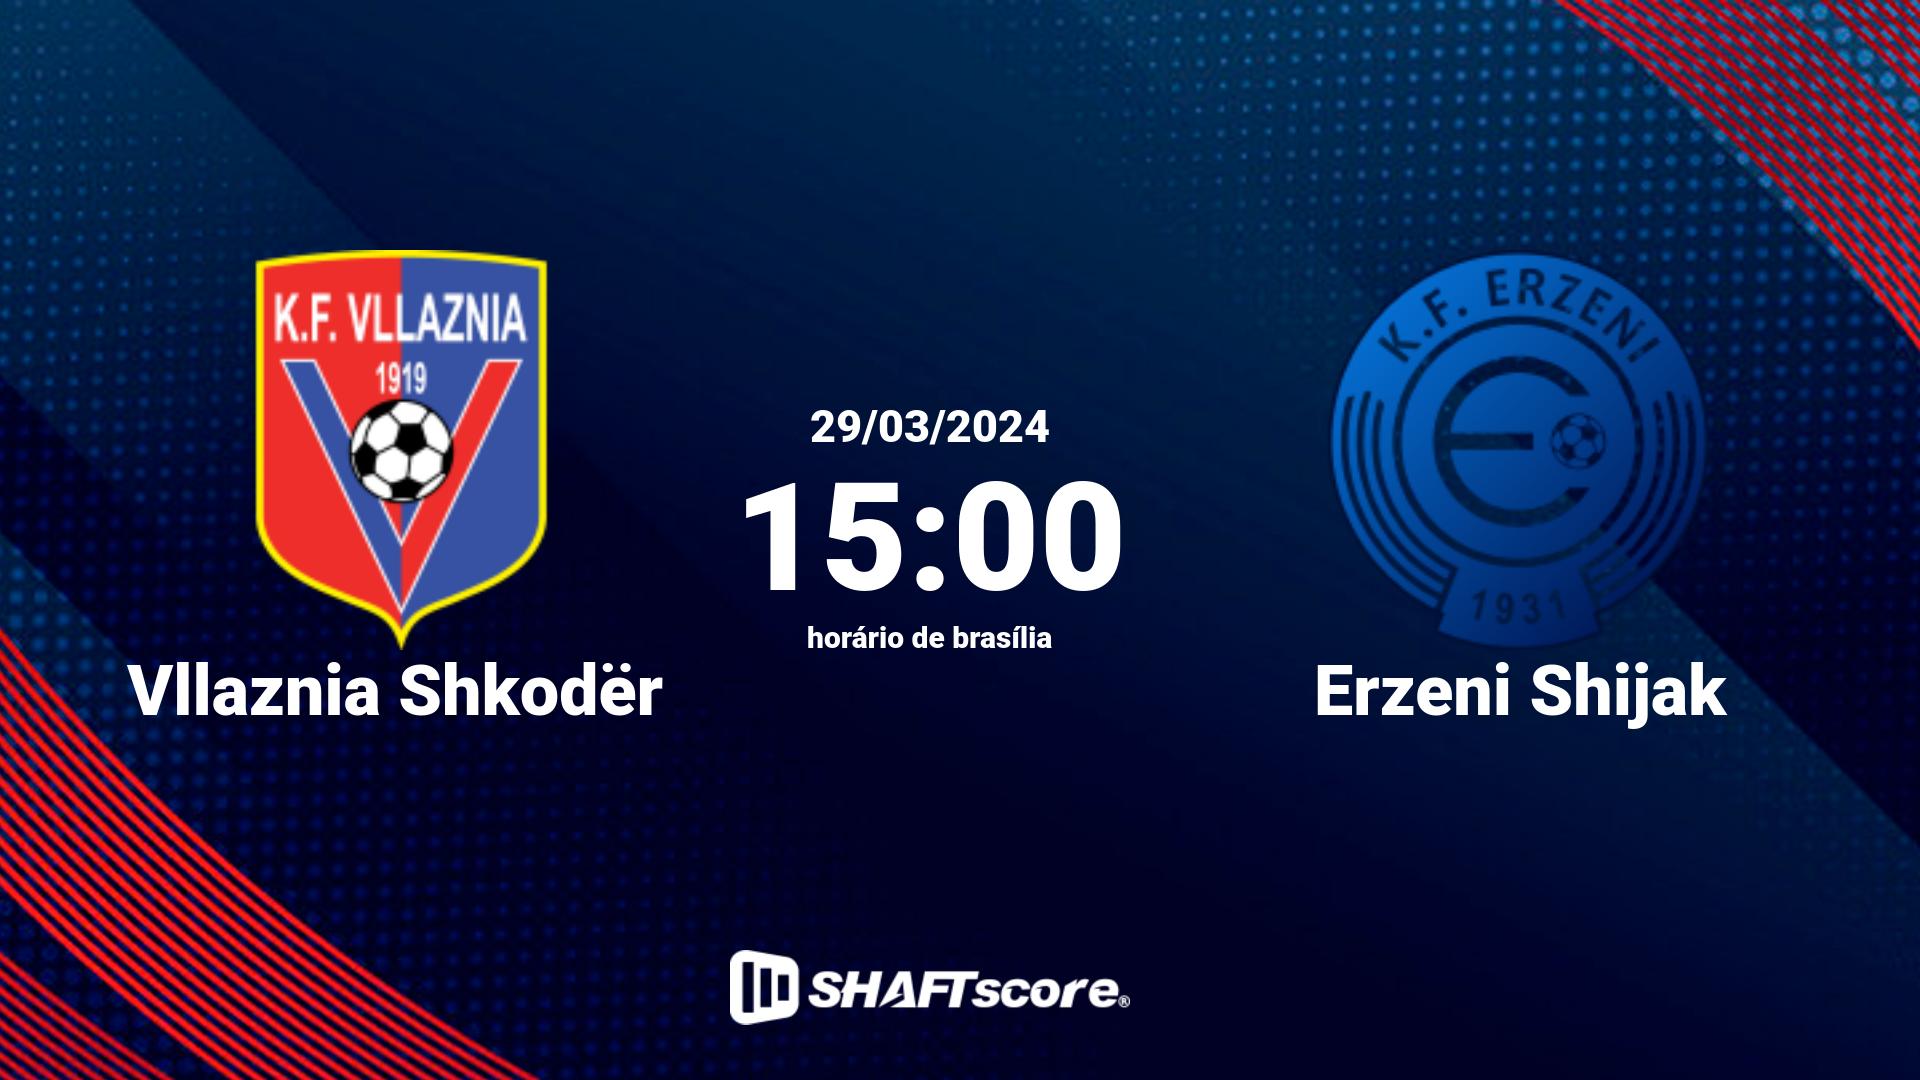 Estatísticas do jogo Vllaznia Shkodër vs Erzeni Shijak 29.03 15:00